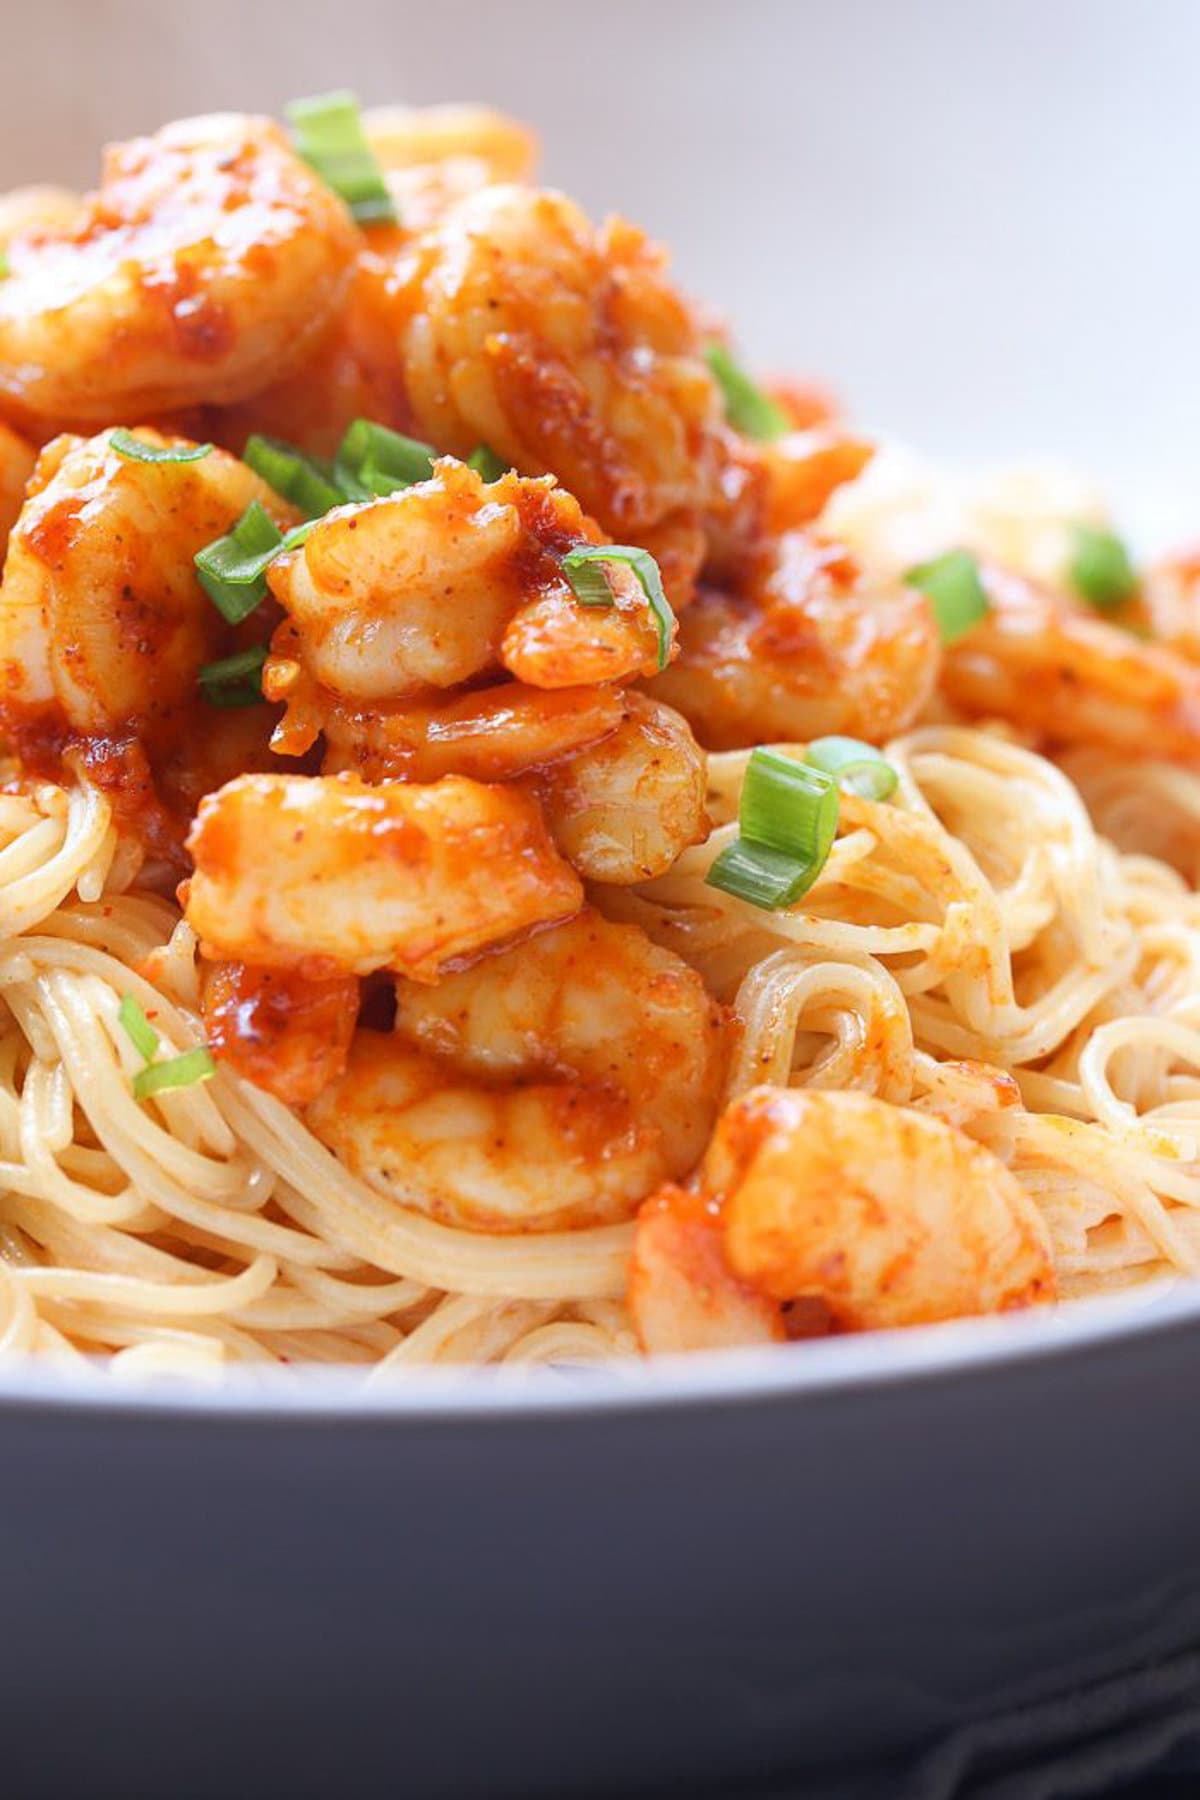 Garnished chicken and shrimp on noodles